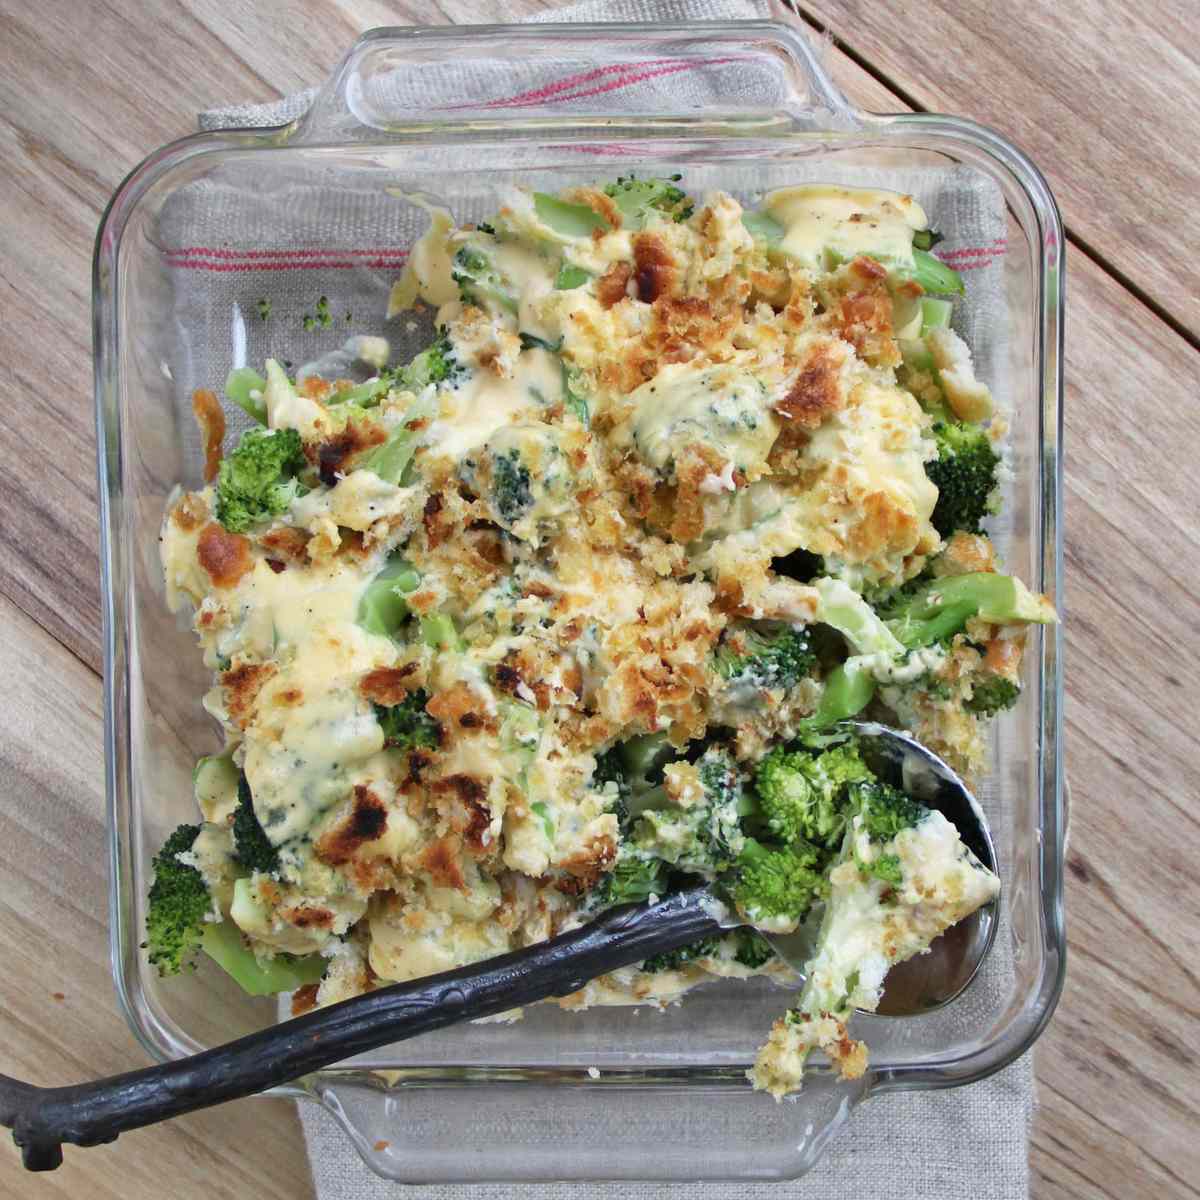 Broccoli-Cheddar奶油烤菜